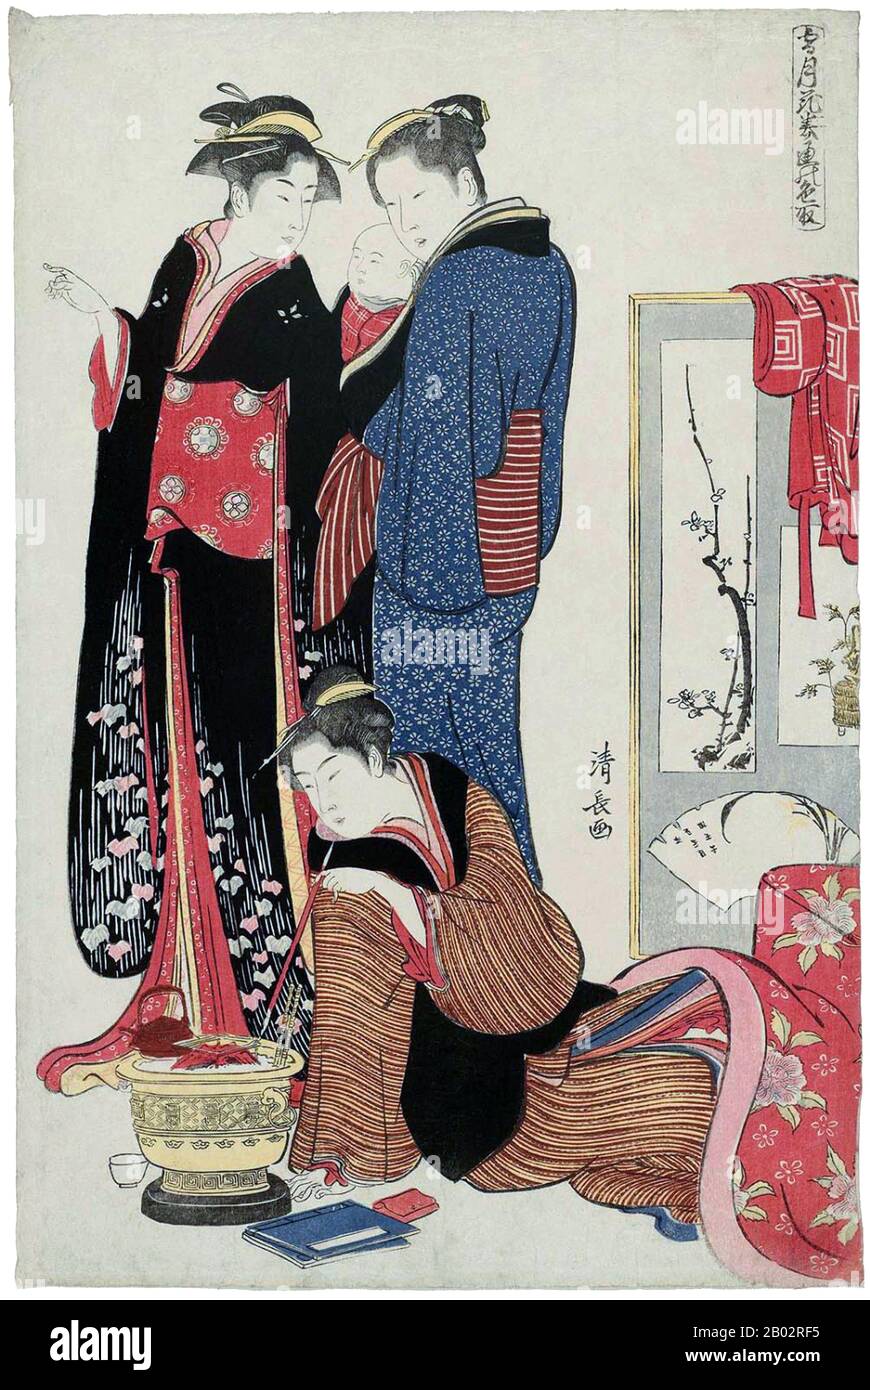 Torii Kiyonaga (鳥居 清長, 1752 - 28 de junio de 1815) fue un grabador ukiyo-e japonés y pintor de la escuela Torii. Originalmente Sekiguchi Shinsuke, hijo de un librero de Edo, tomó a Torii Kiyonaga como nombre artístico (gō). Aunque no se relacionó biológicamente con la familia Torii, se convirtió en jefe del grupo después de la muerte de su padre adoptivo y maestro Torii Kiyomitsu. El maestro Kiyomitsu murió en 1785; ya que su hijo murió joven, y Kiyotsune, el mayor de Kiyonaga, era un artista menos prometedor, Kiyonaga fue la elección obvia para suceder a Kiyomitsu a la dirección de la escuela Torii. Sin embargo, él dela Foto de stock